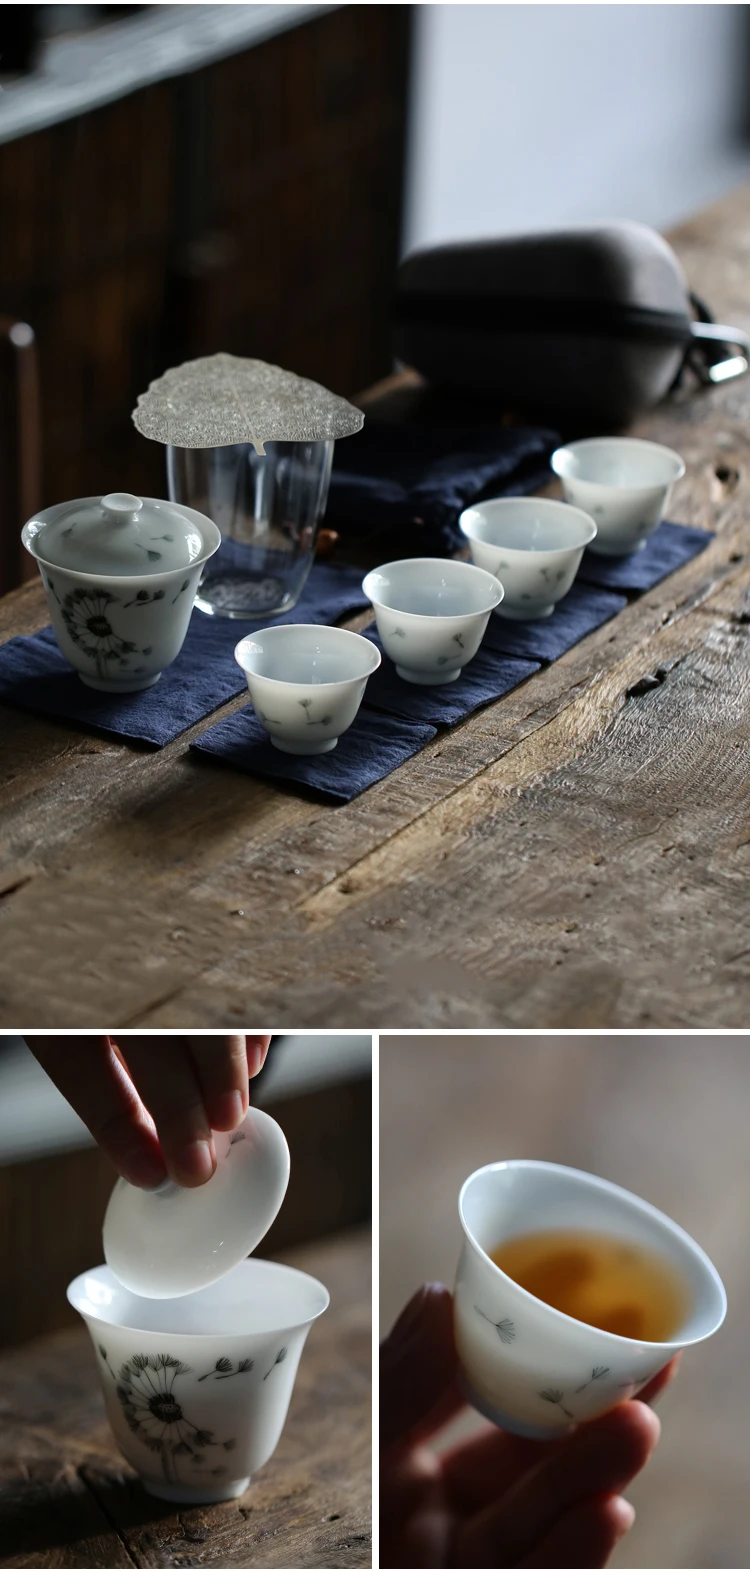 TANGPIN керамический чайник gaiwan Чайные чашки китайский портативный дорожный чайный набор с сумкой для путешествий